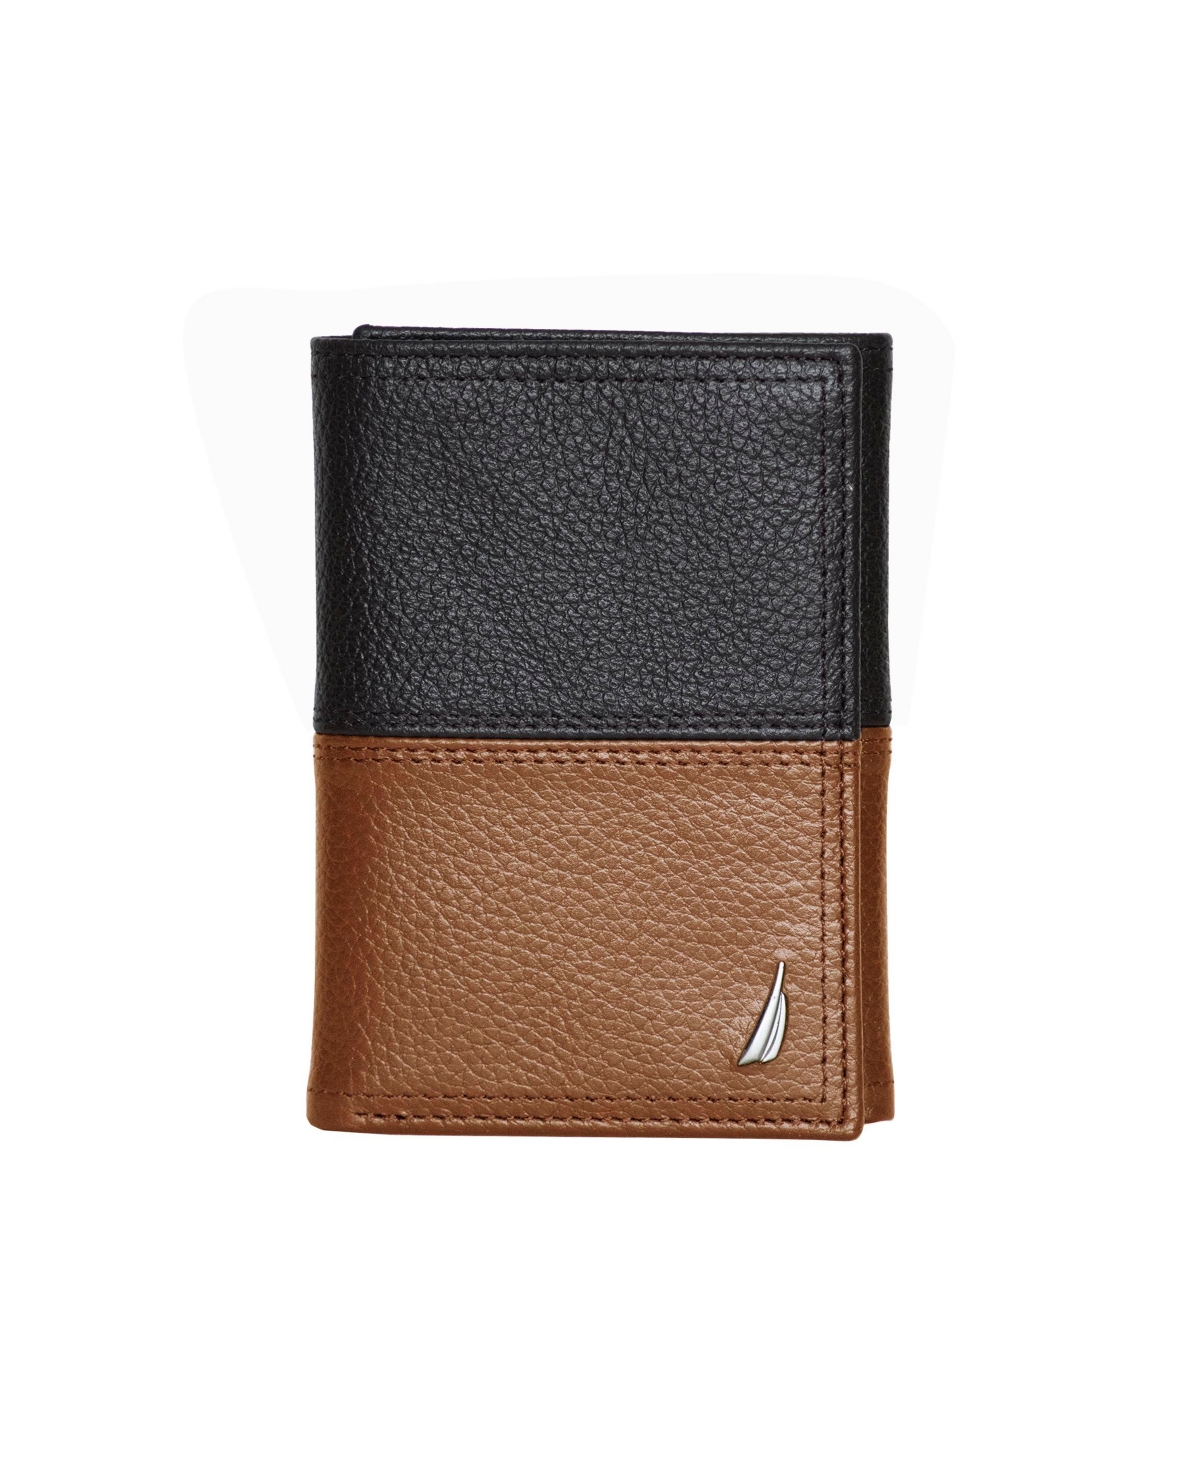 Men's Trifold Leather Wallet - Cognac